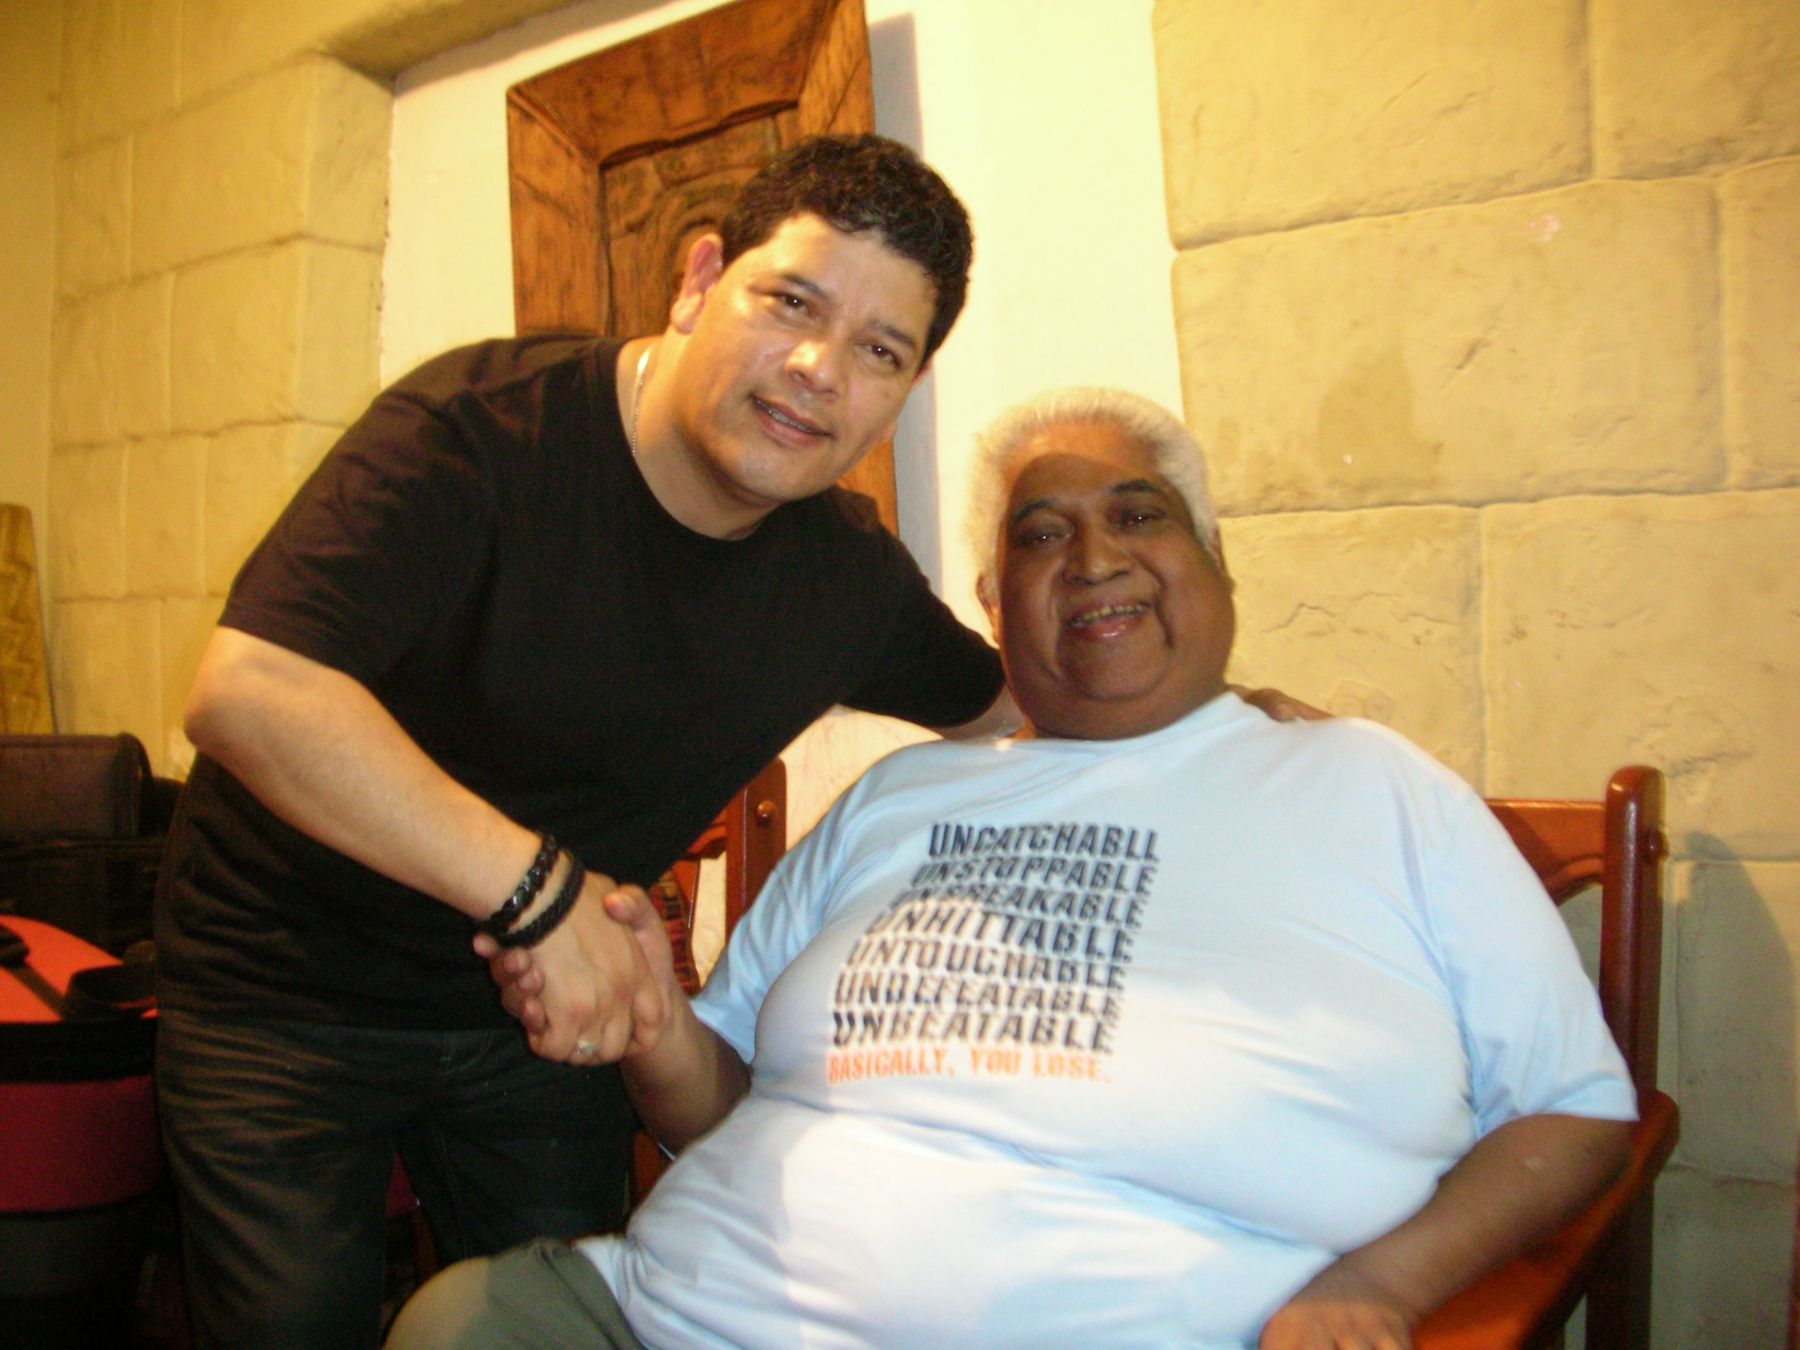 Cantante criollo radicado en españa, Kike Bracamonte, difunde el último dueto que grabó Arturo "Zambo" cavero en enero de este año.